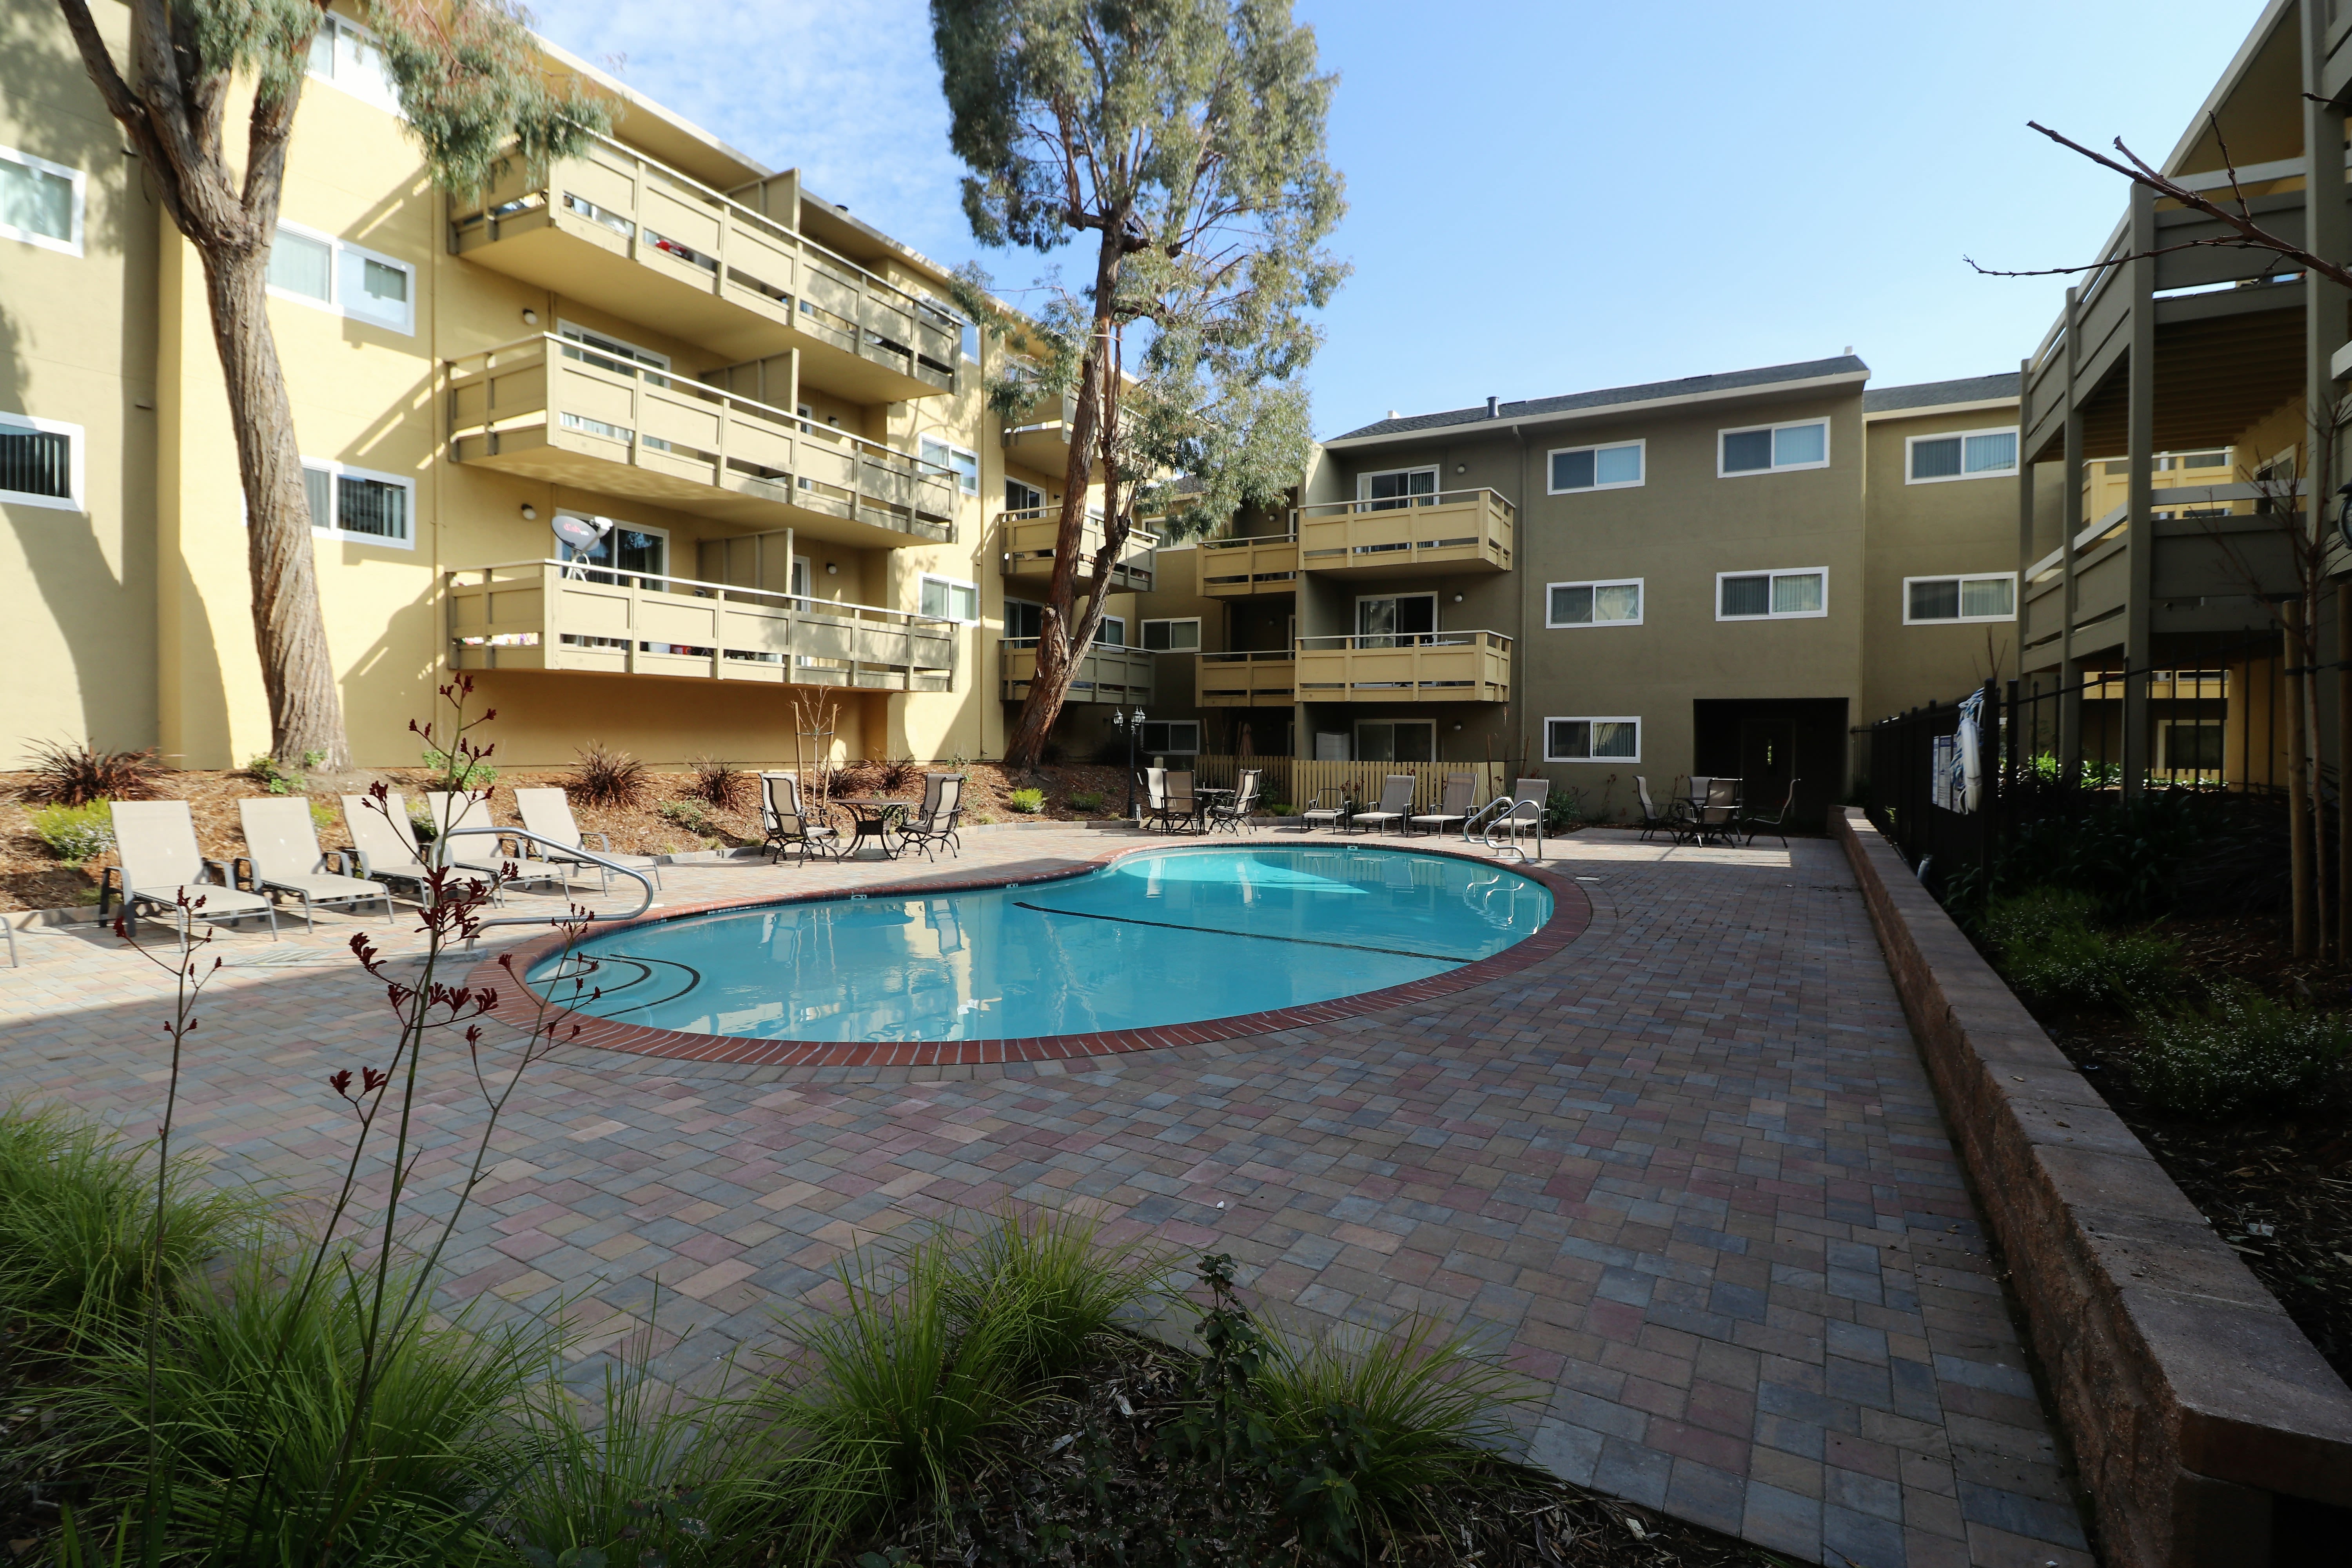 Resort-style swimming pool at Bayfair Apartment Homes in San Lorenzo, California